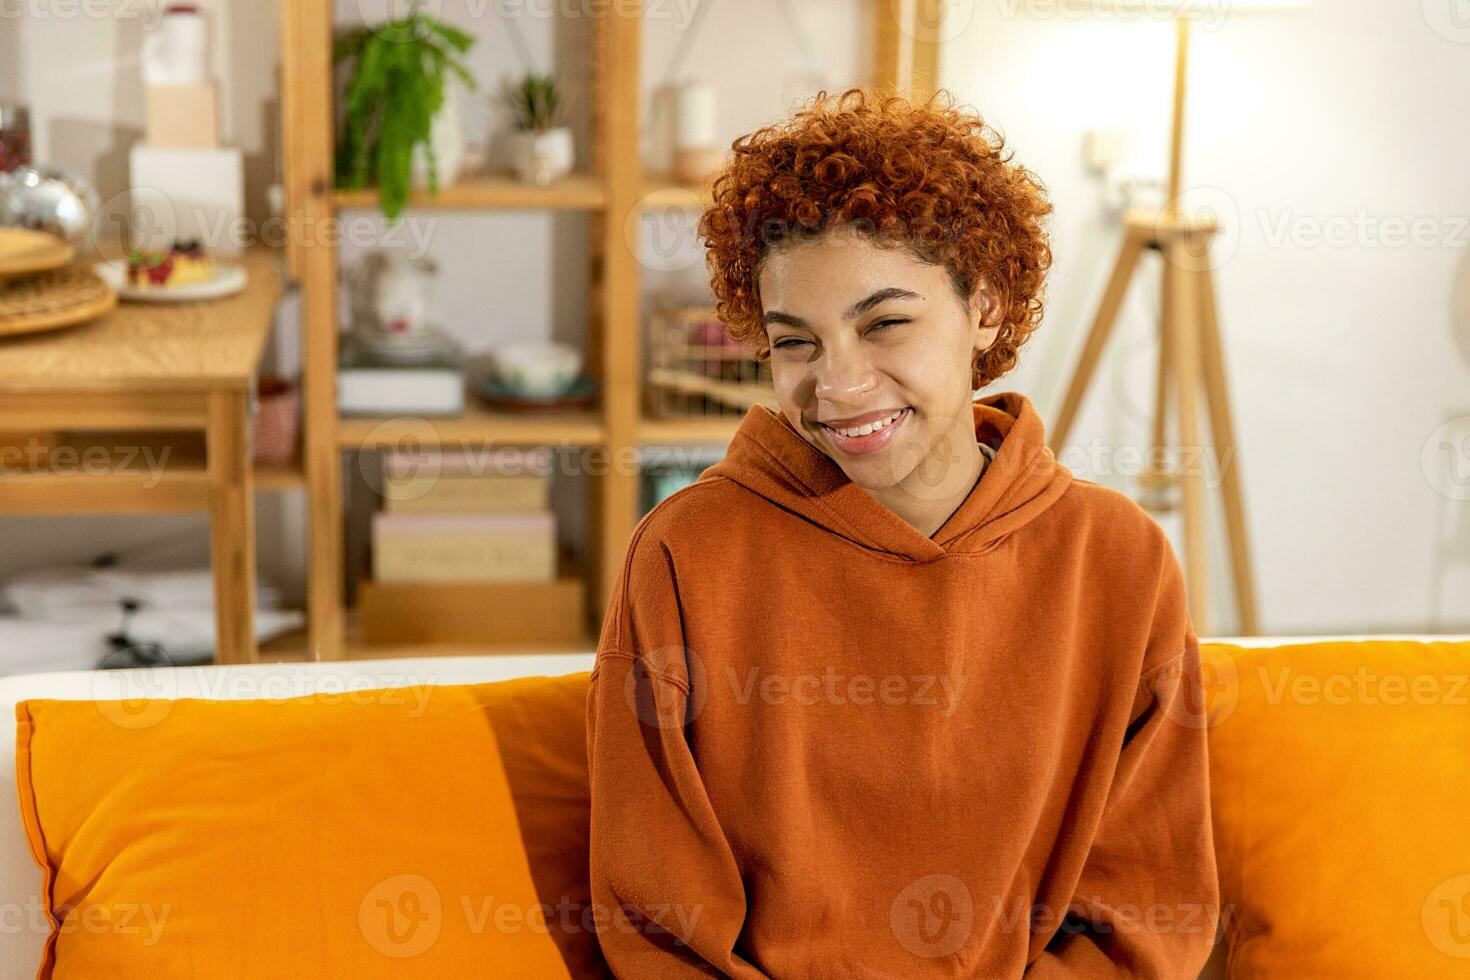 linda garota afro-americana com penteado afro sorrindo sentado no sofá em casa interior. jovem africana com cabelos cacheados rindo. liberdade felicidade despreocupado conceito de pessoas felizes. foto